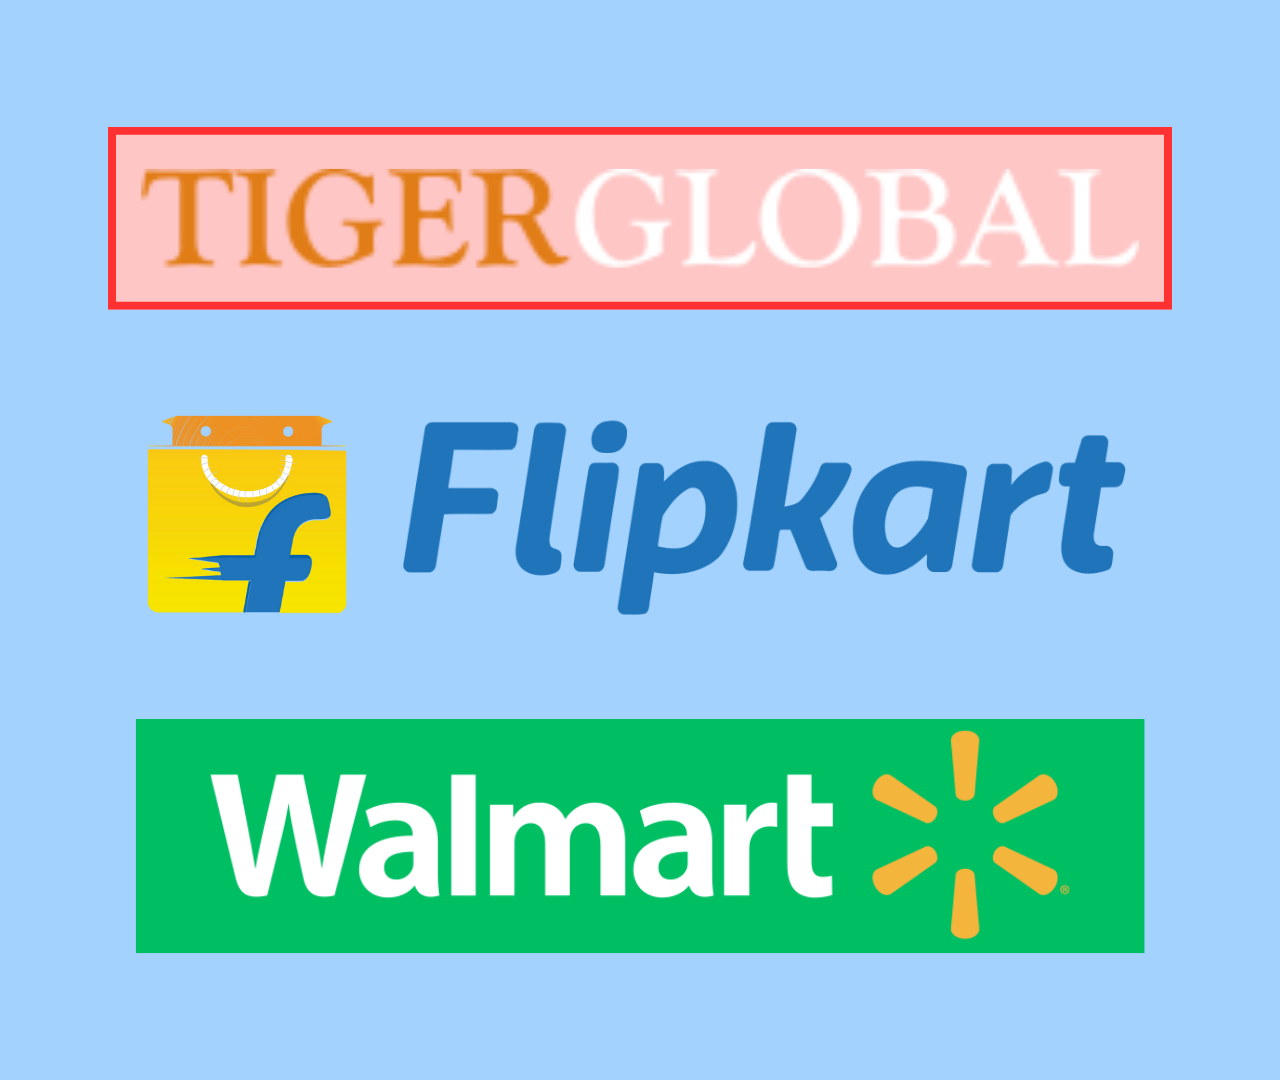 Tiger Global Exit Flipkart: Walmart Buys Out Tiger Global’s Remaining Stake in Flipkart for $1.4 Billion